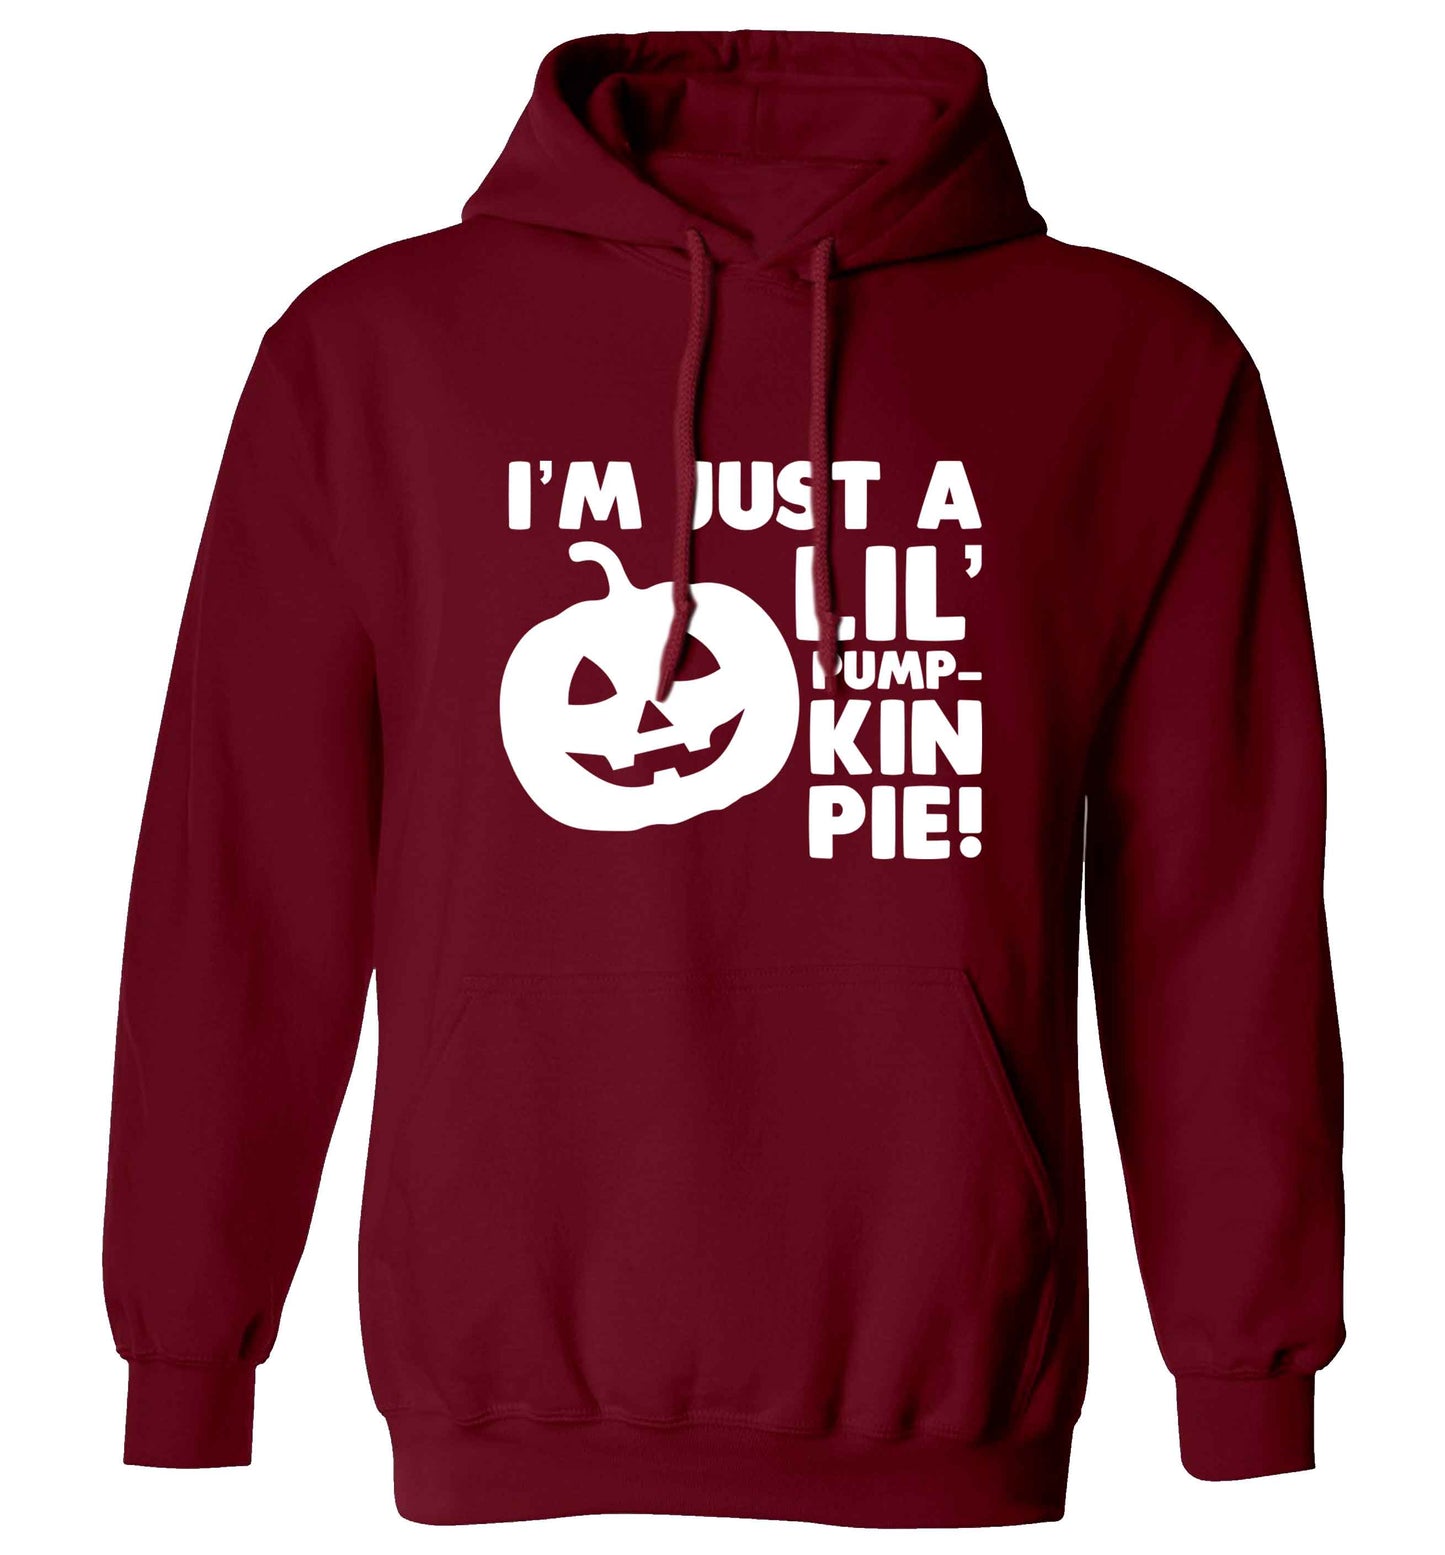 I'm just a lil' pumpkin pie adults unisex maroon hoodie 2XL